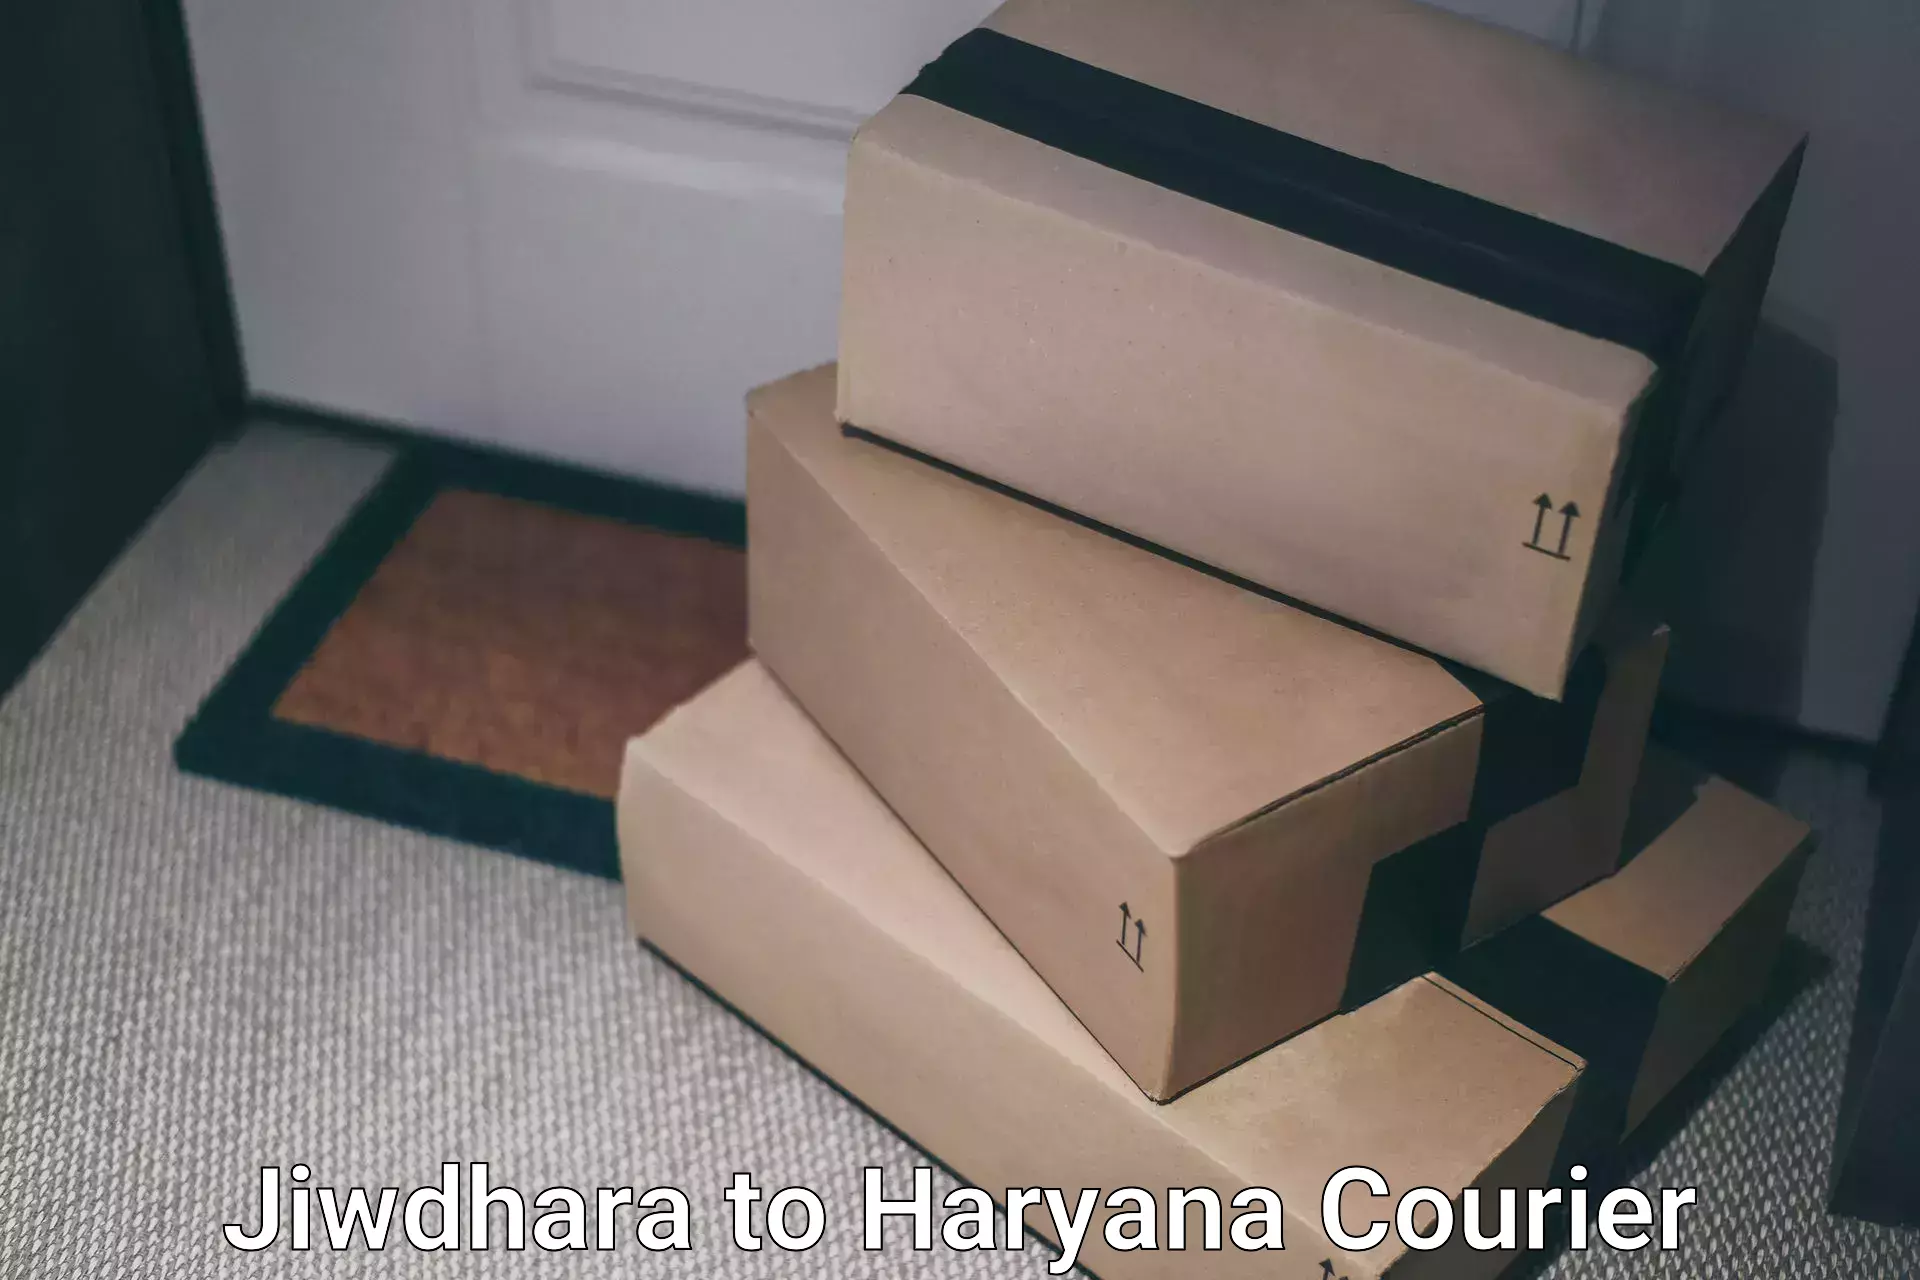 Premium courier solutions Jiwdhara to Chirya